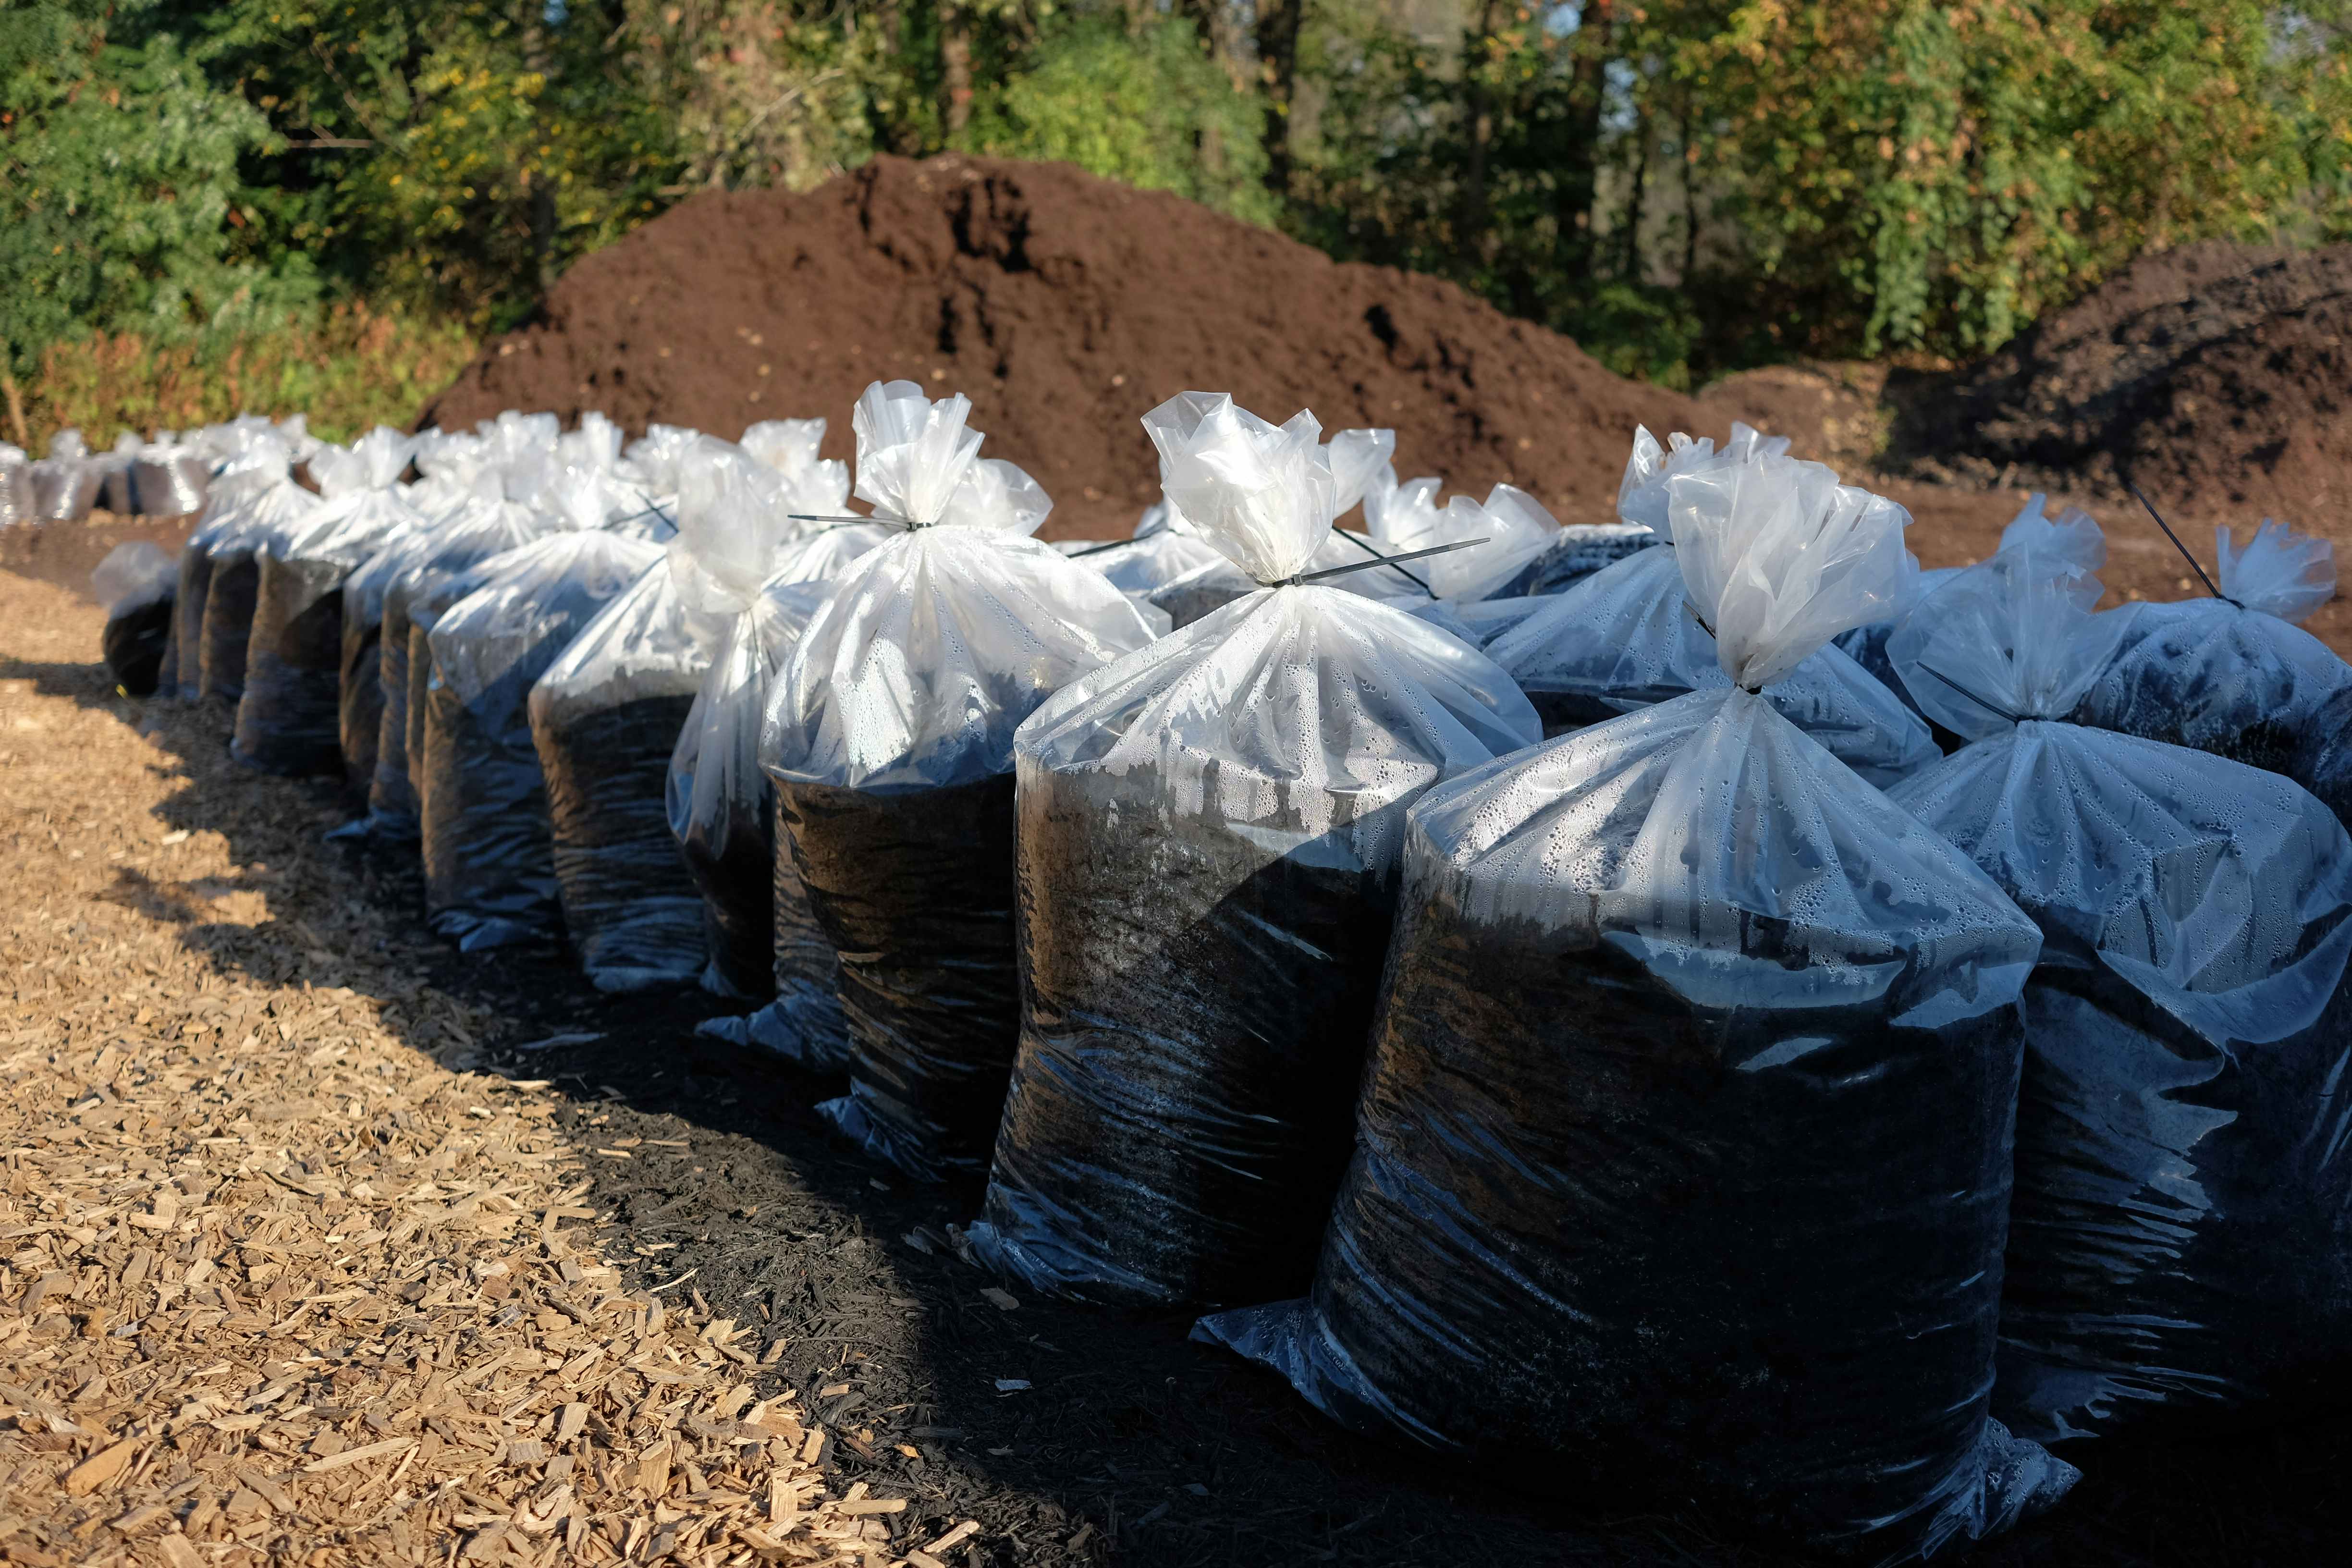 Bags of mulch in an outdoor garden center